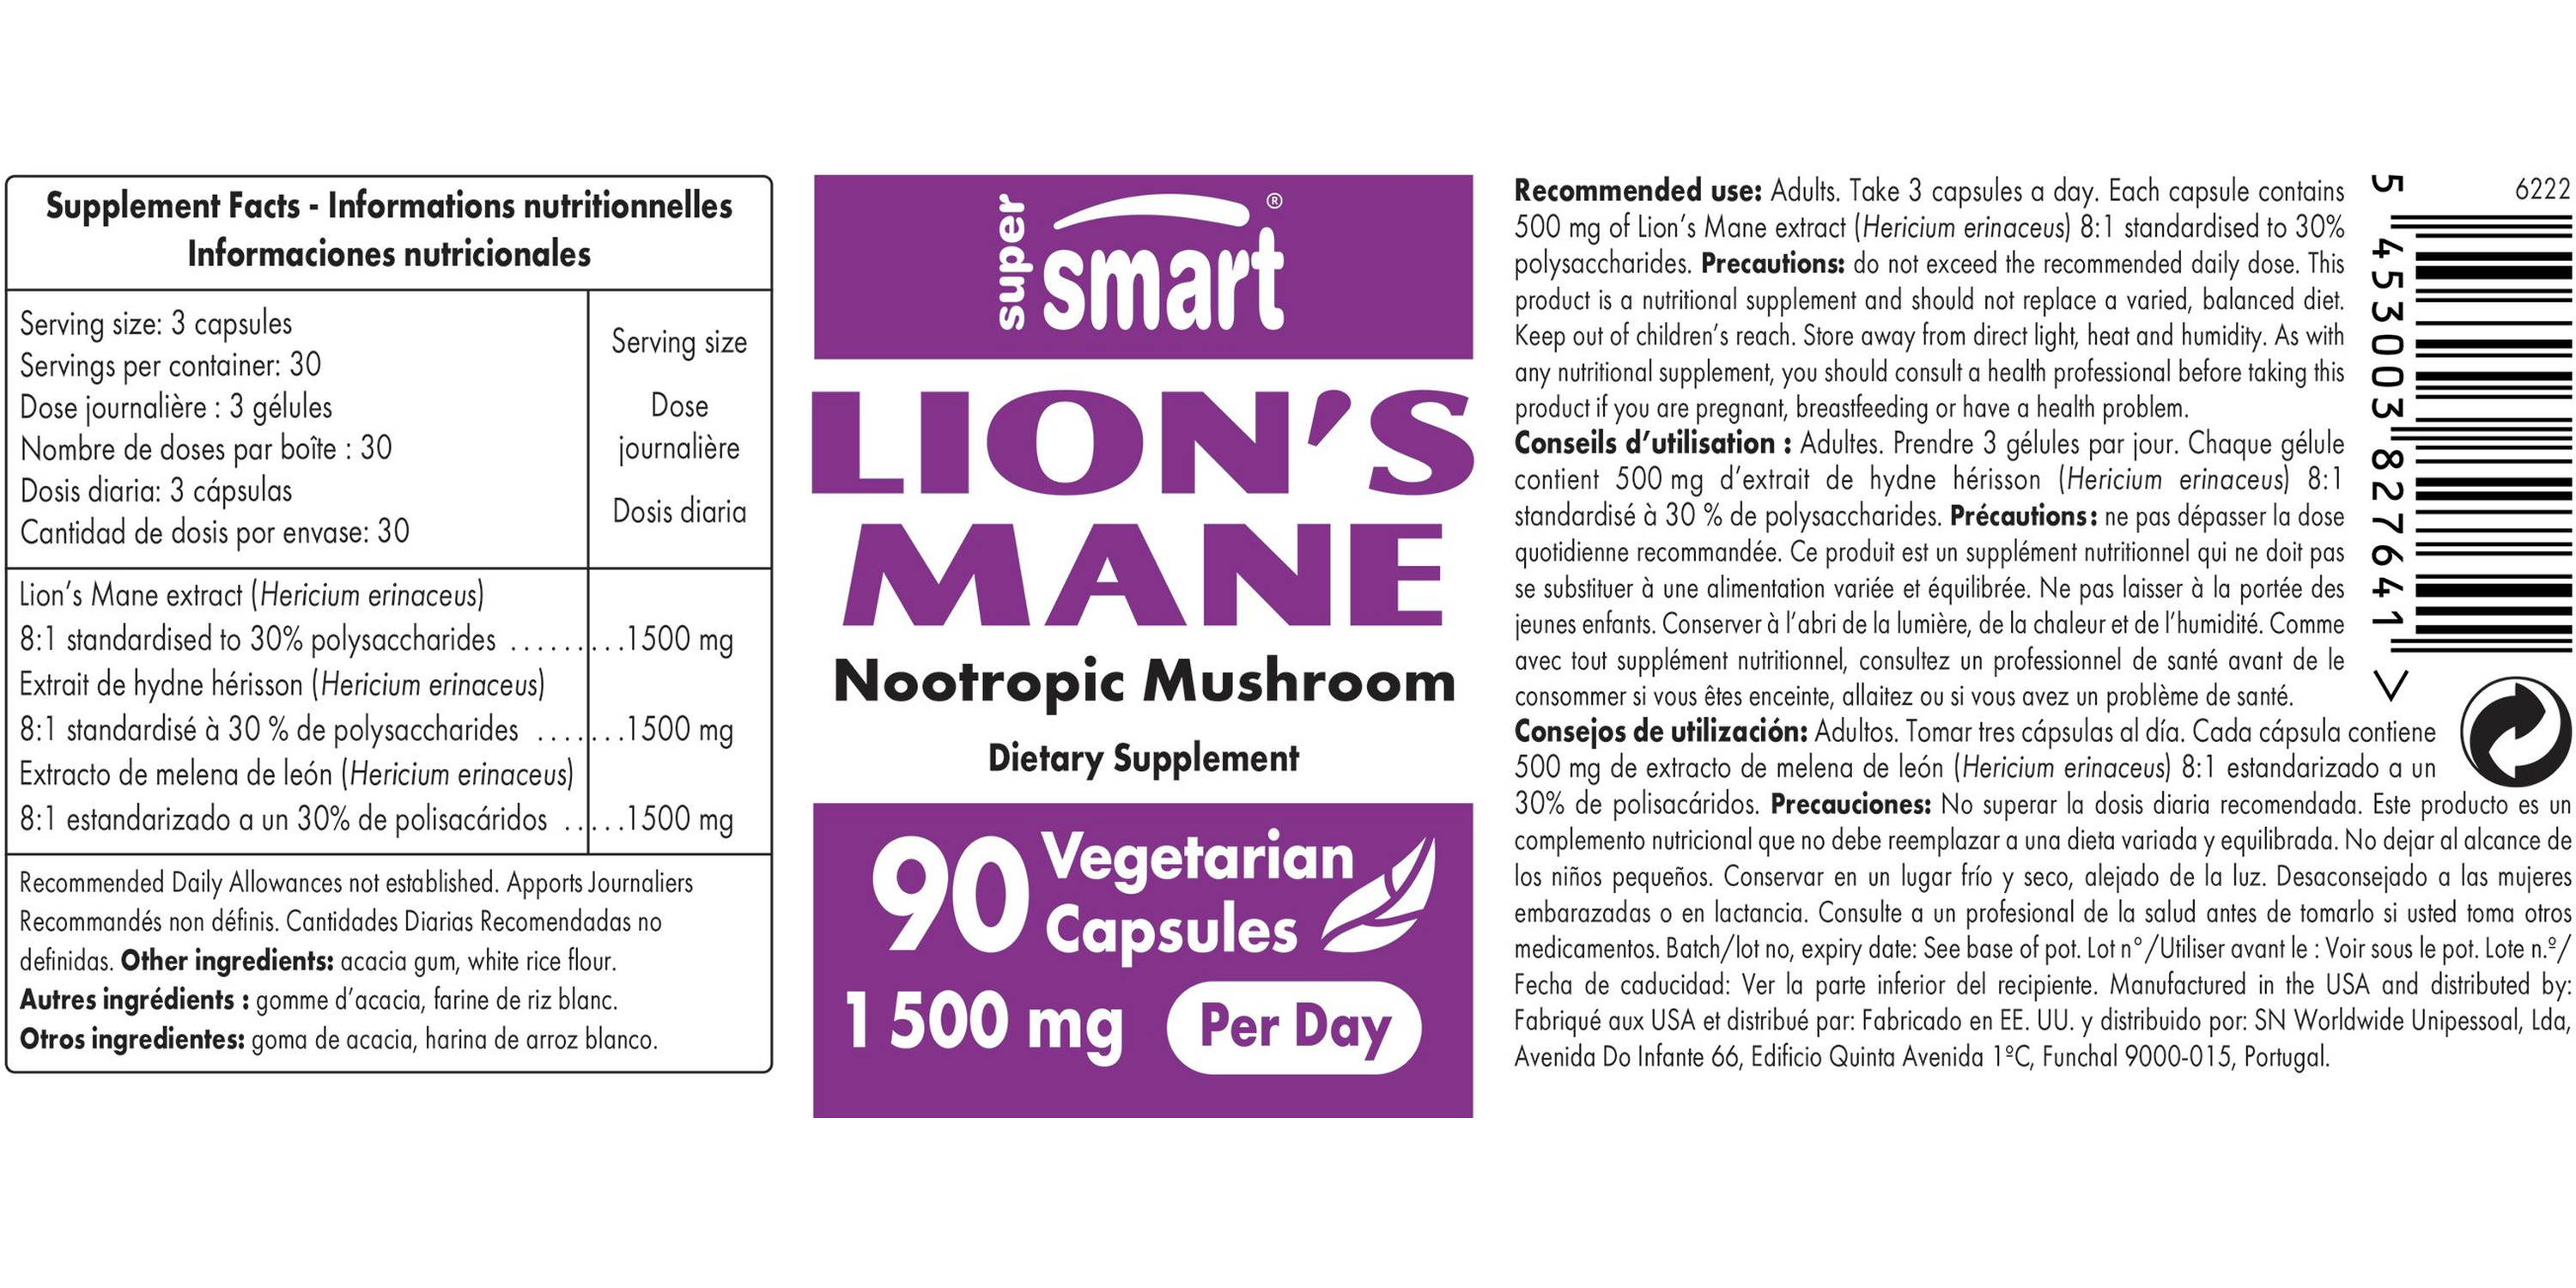 Lion's Mane Supplement 